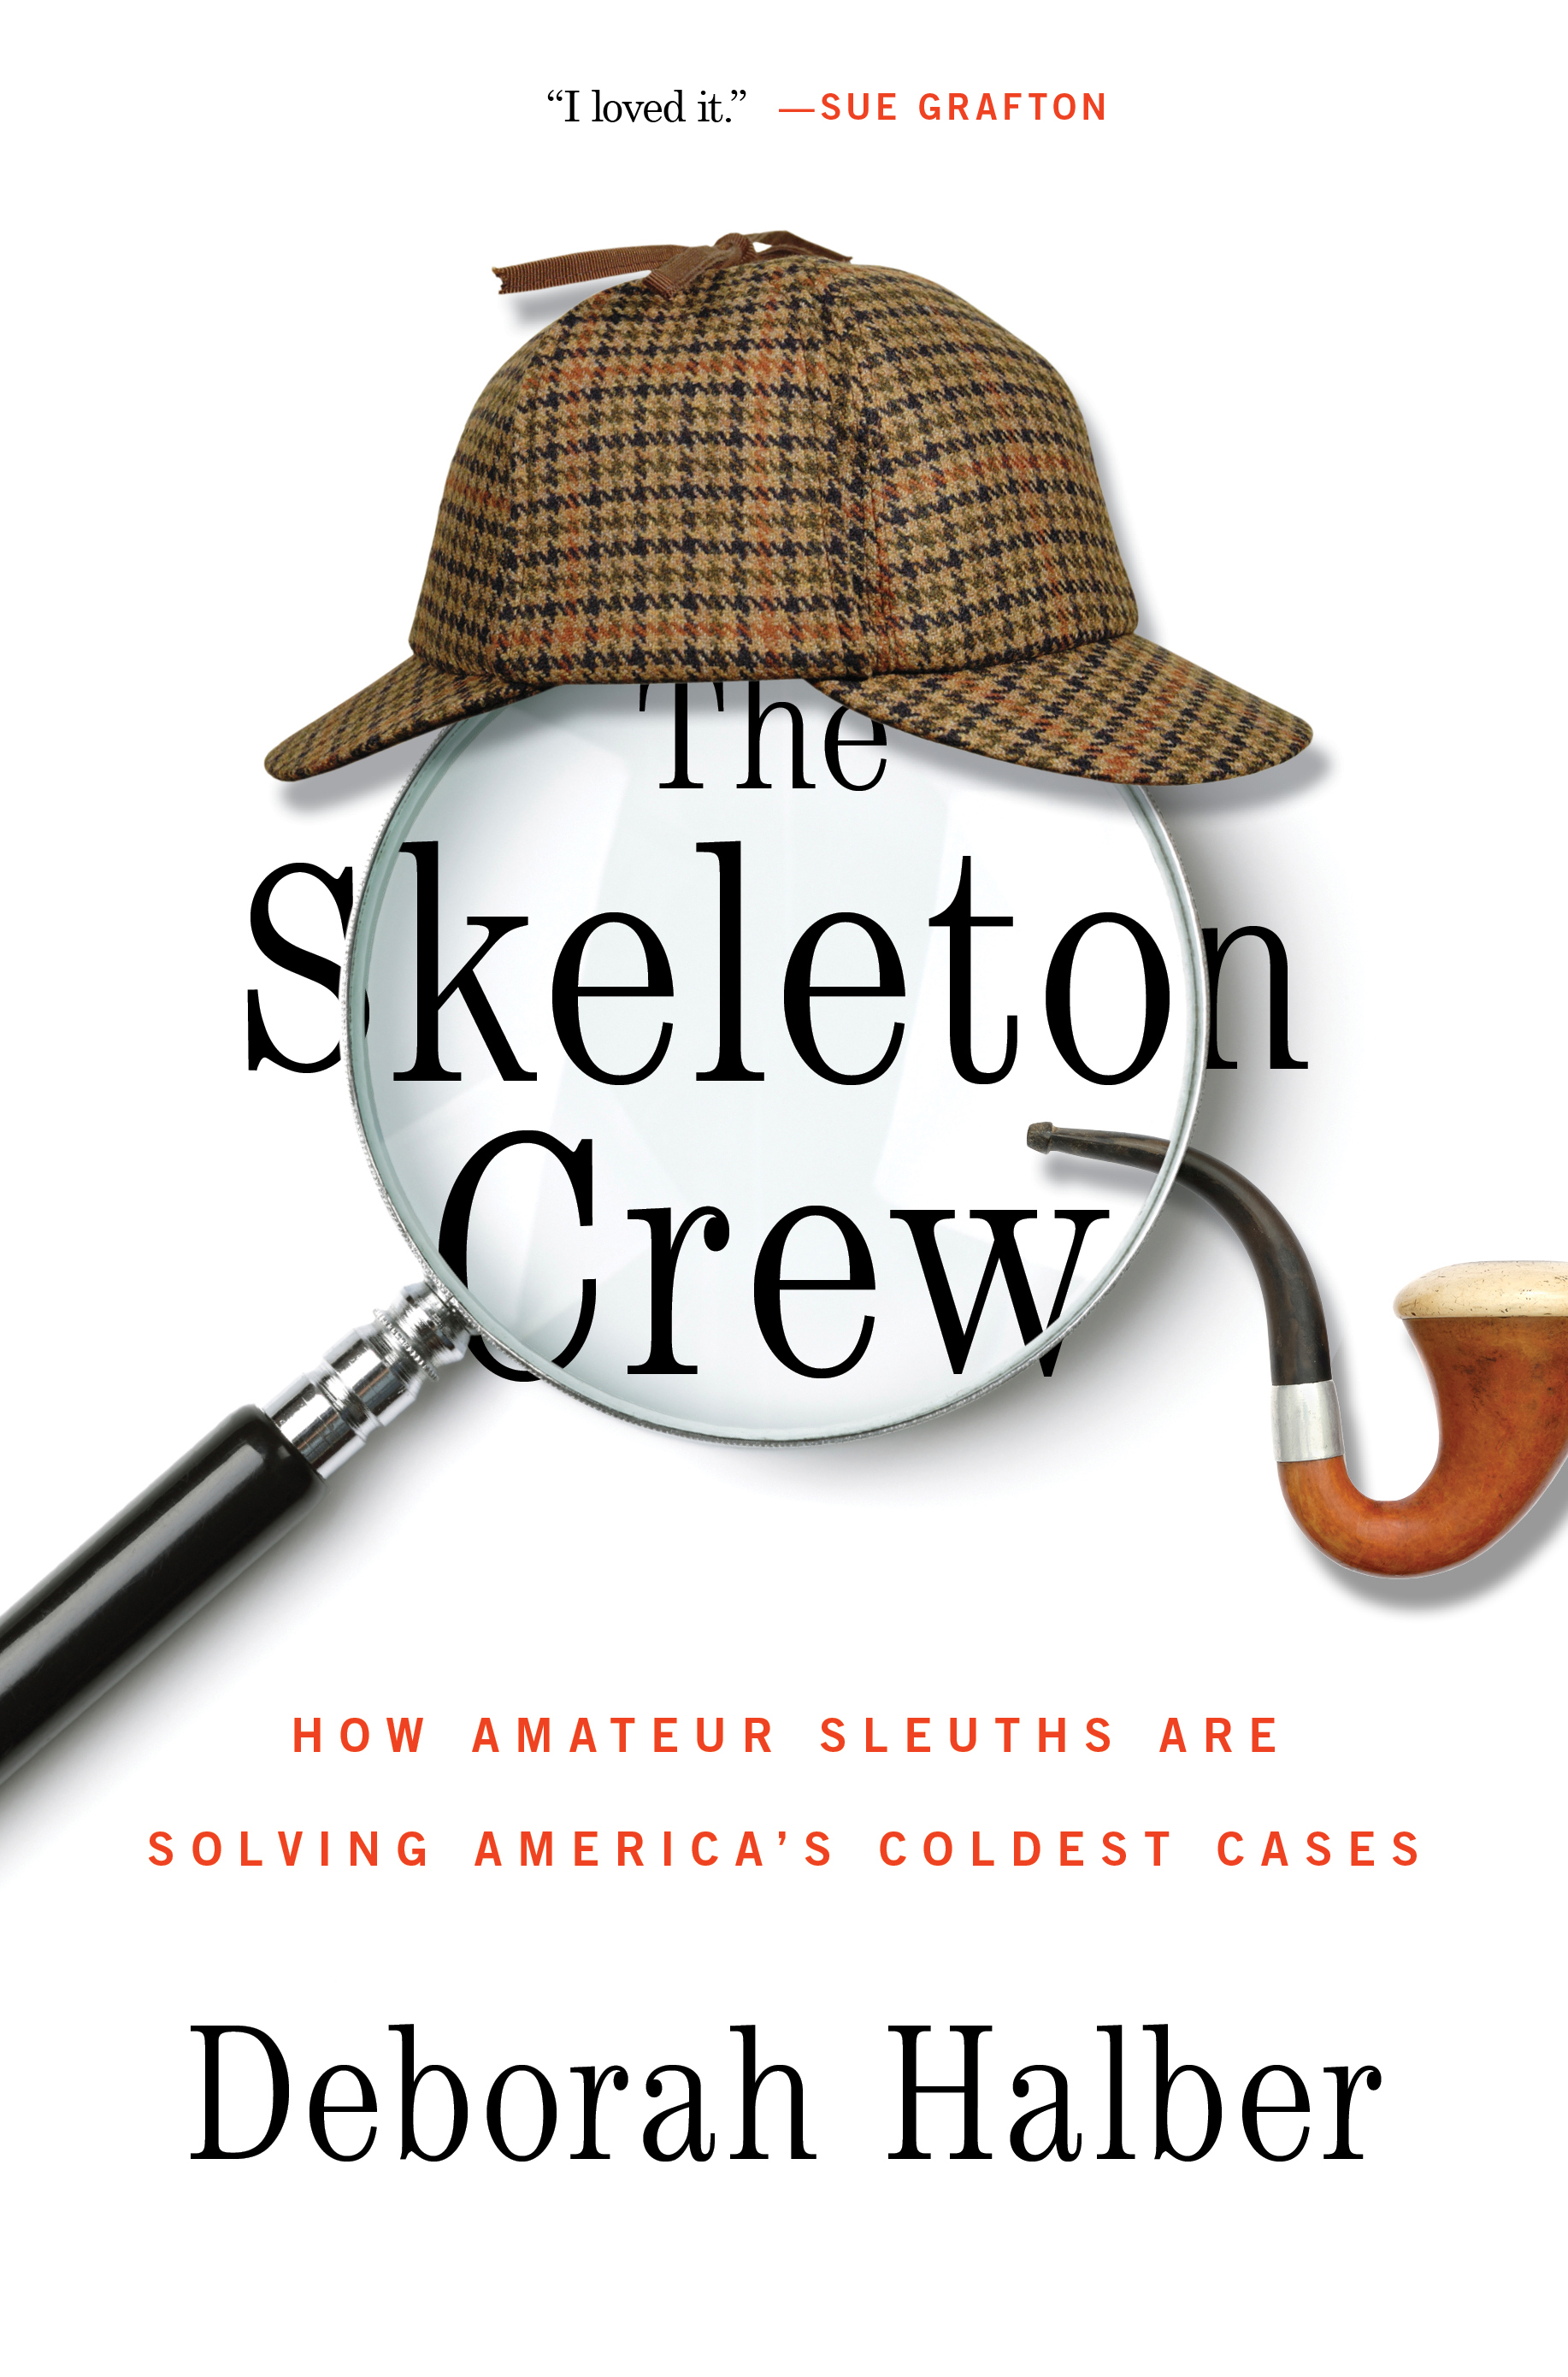 The Skeleton Crew, by Deborah Halber